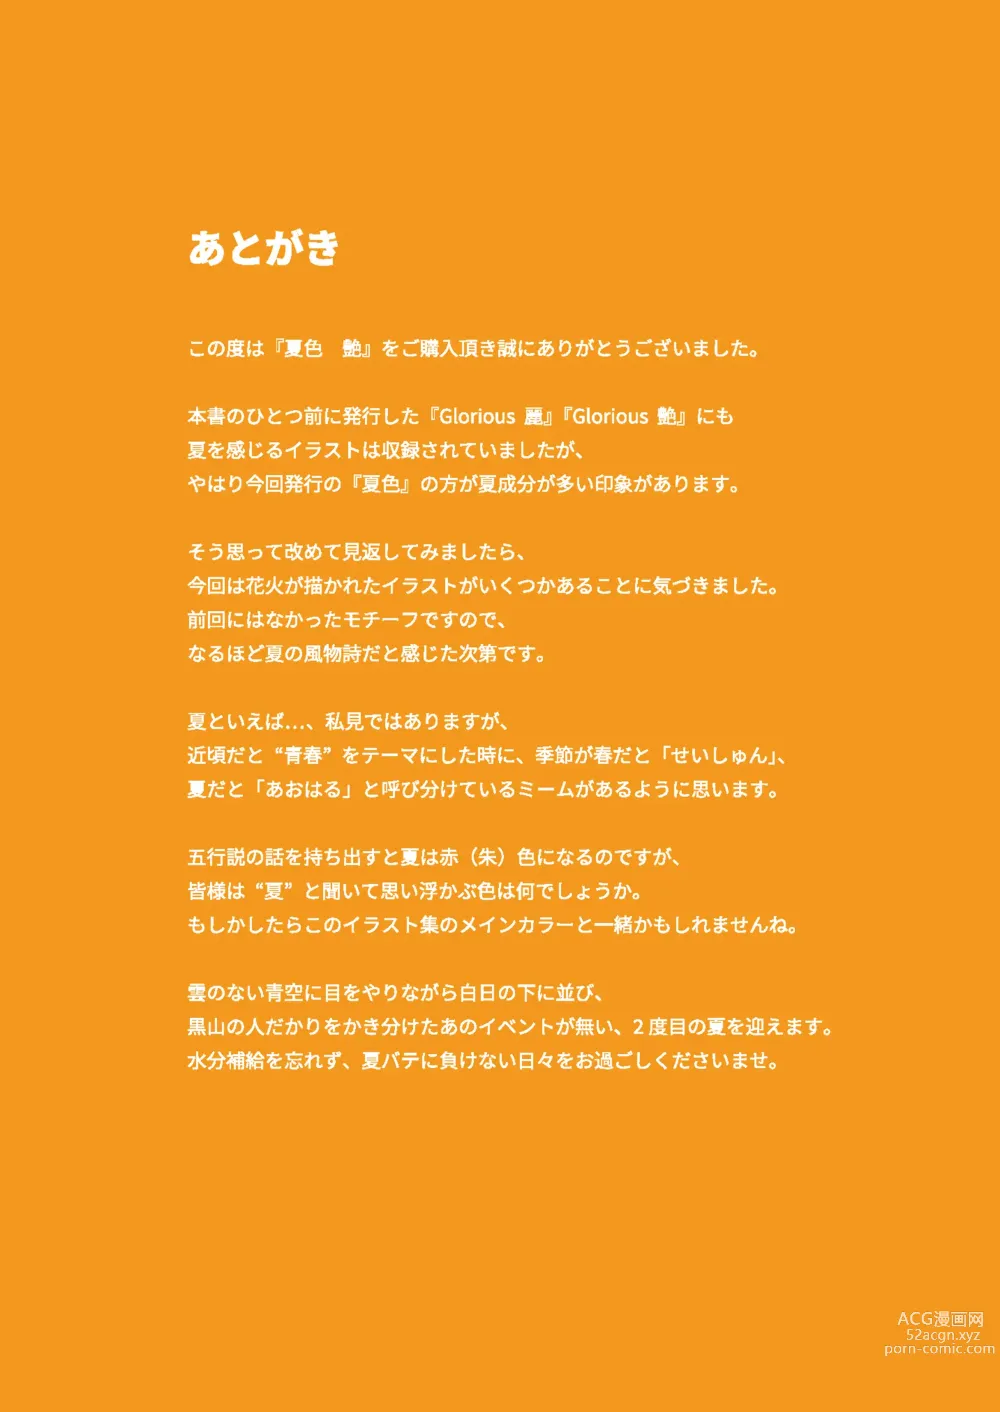 Page 90 of manga Girls Collection 2021 Summer - Natsuiro Tsuya